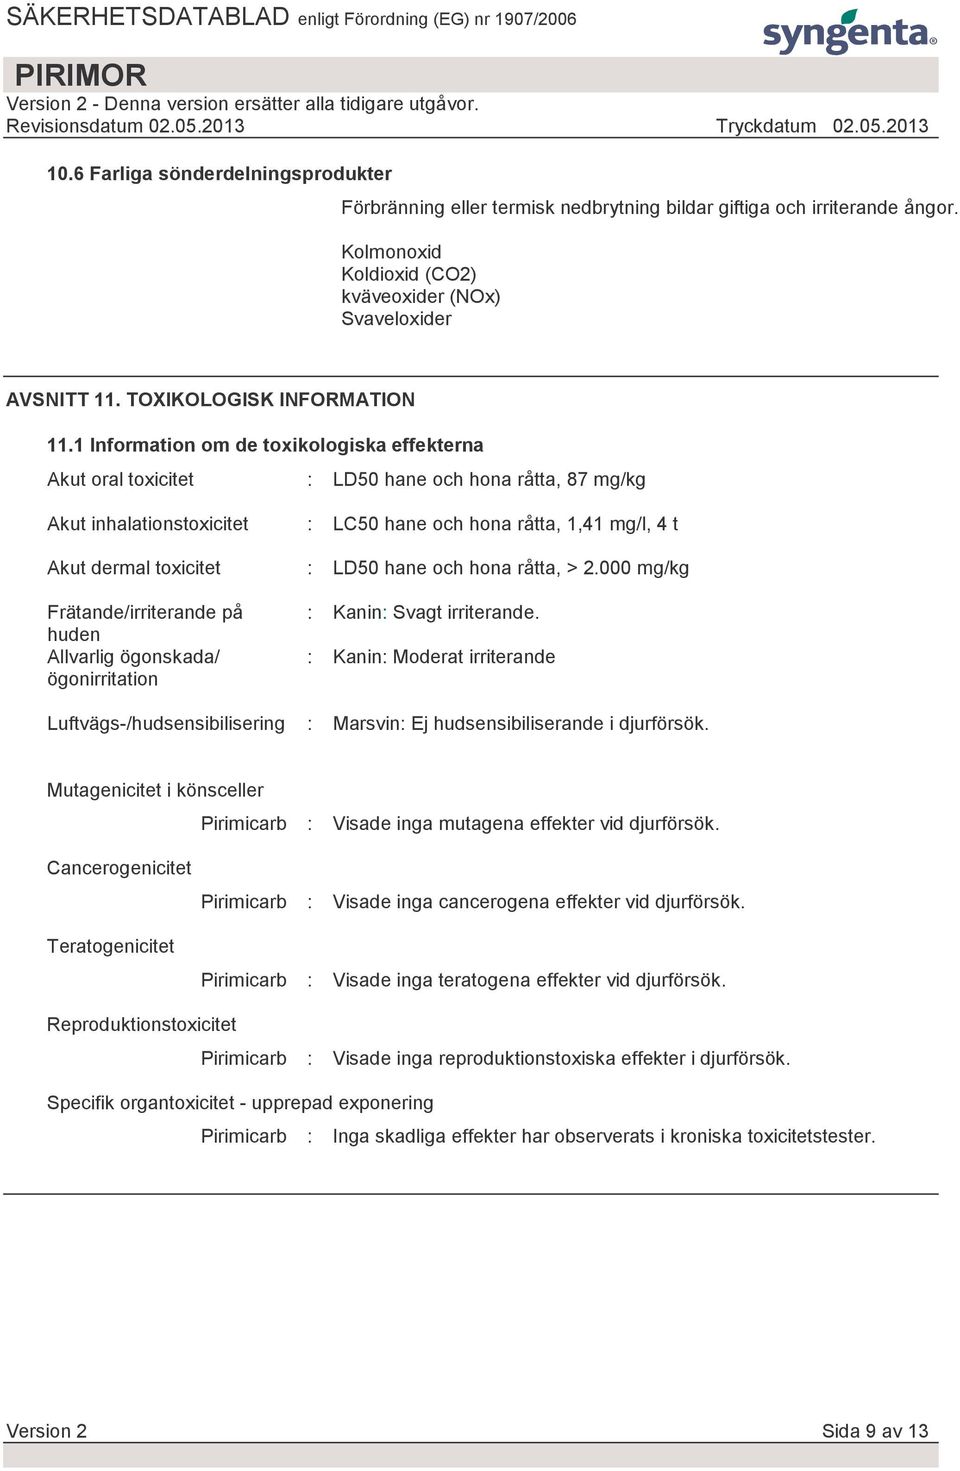 1 Information om de toxikologiska effekterna Akut oral toxicitet : LD50 hane och hona råtta, 87 mg/kg Akut inhalationstoxicitet Akut dermal toxicitet Frätande/irriterande på huden Allvarlig